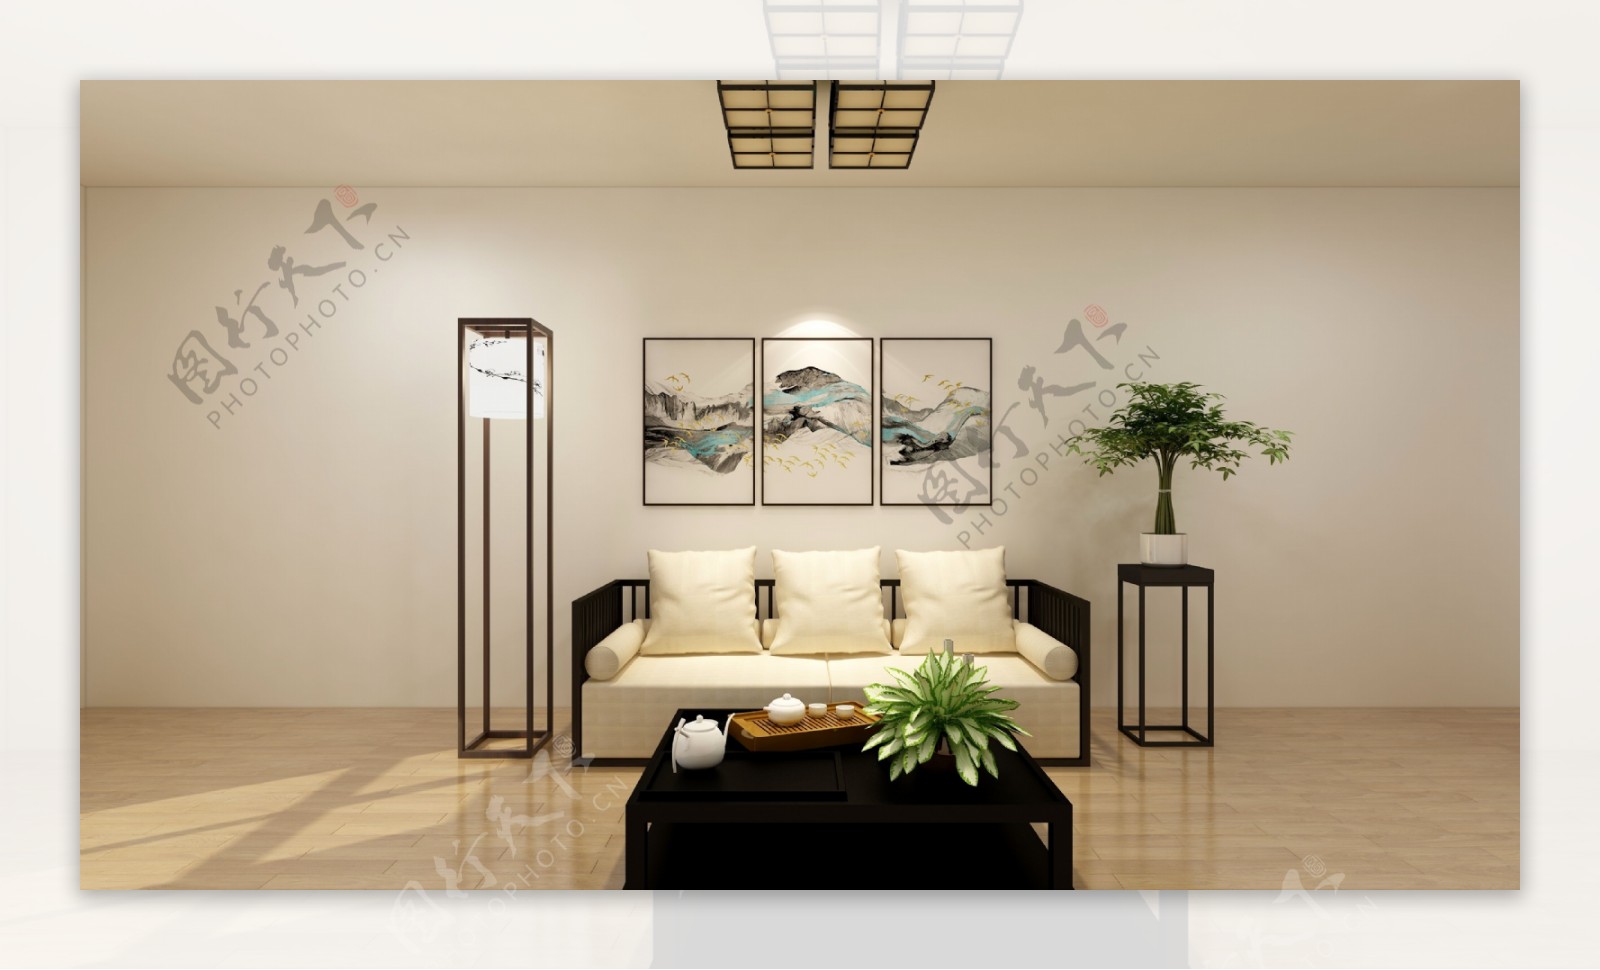 新中式客厅沙发空白背景装效果图